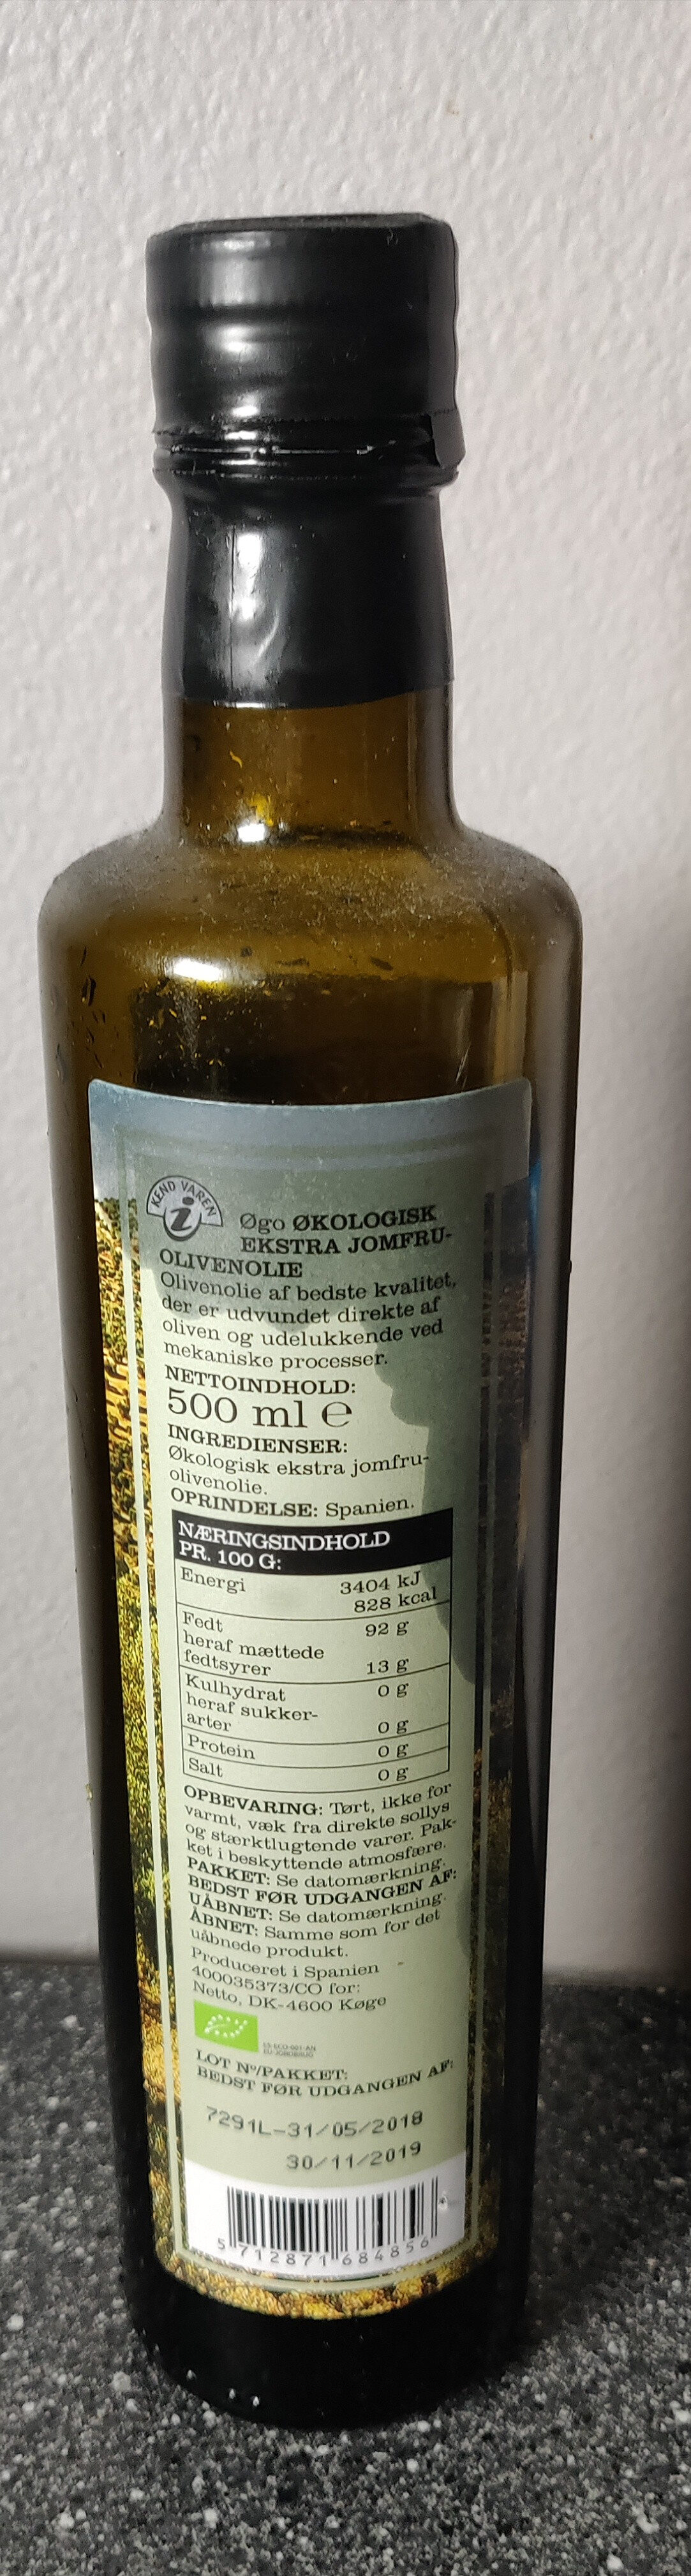 Øgo Økologisk Jomfru Olivenolie - Produkt - da